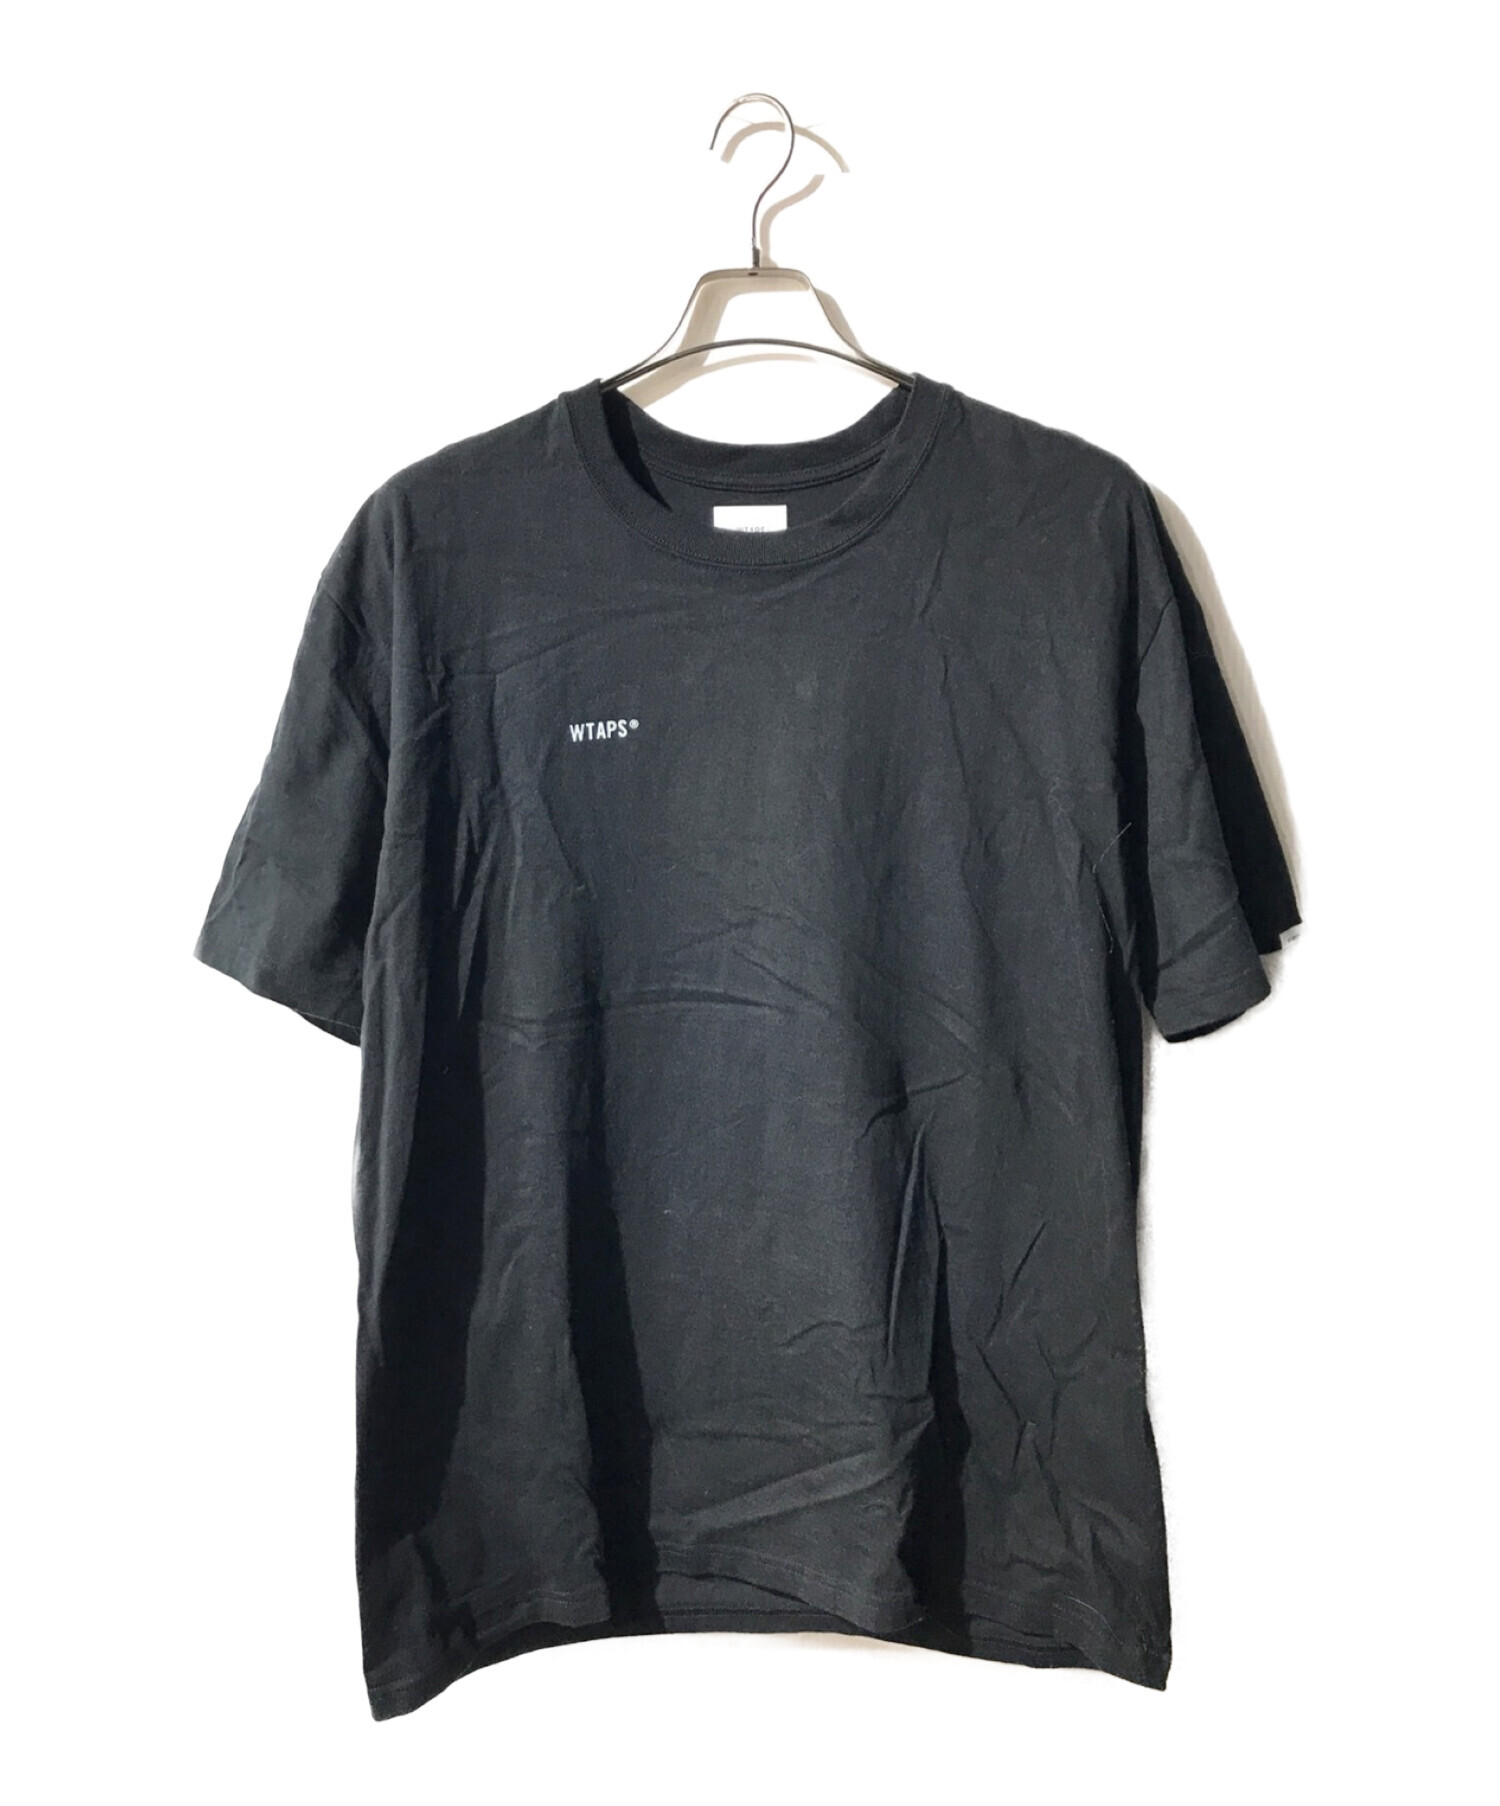 WTAPS (ダブルタップス) MMXX TEE/ロゴプリントTシャツ ブラック サイズ:03